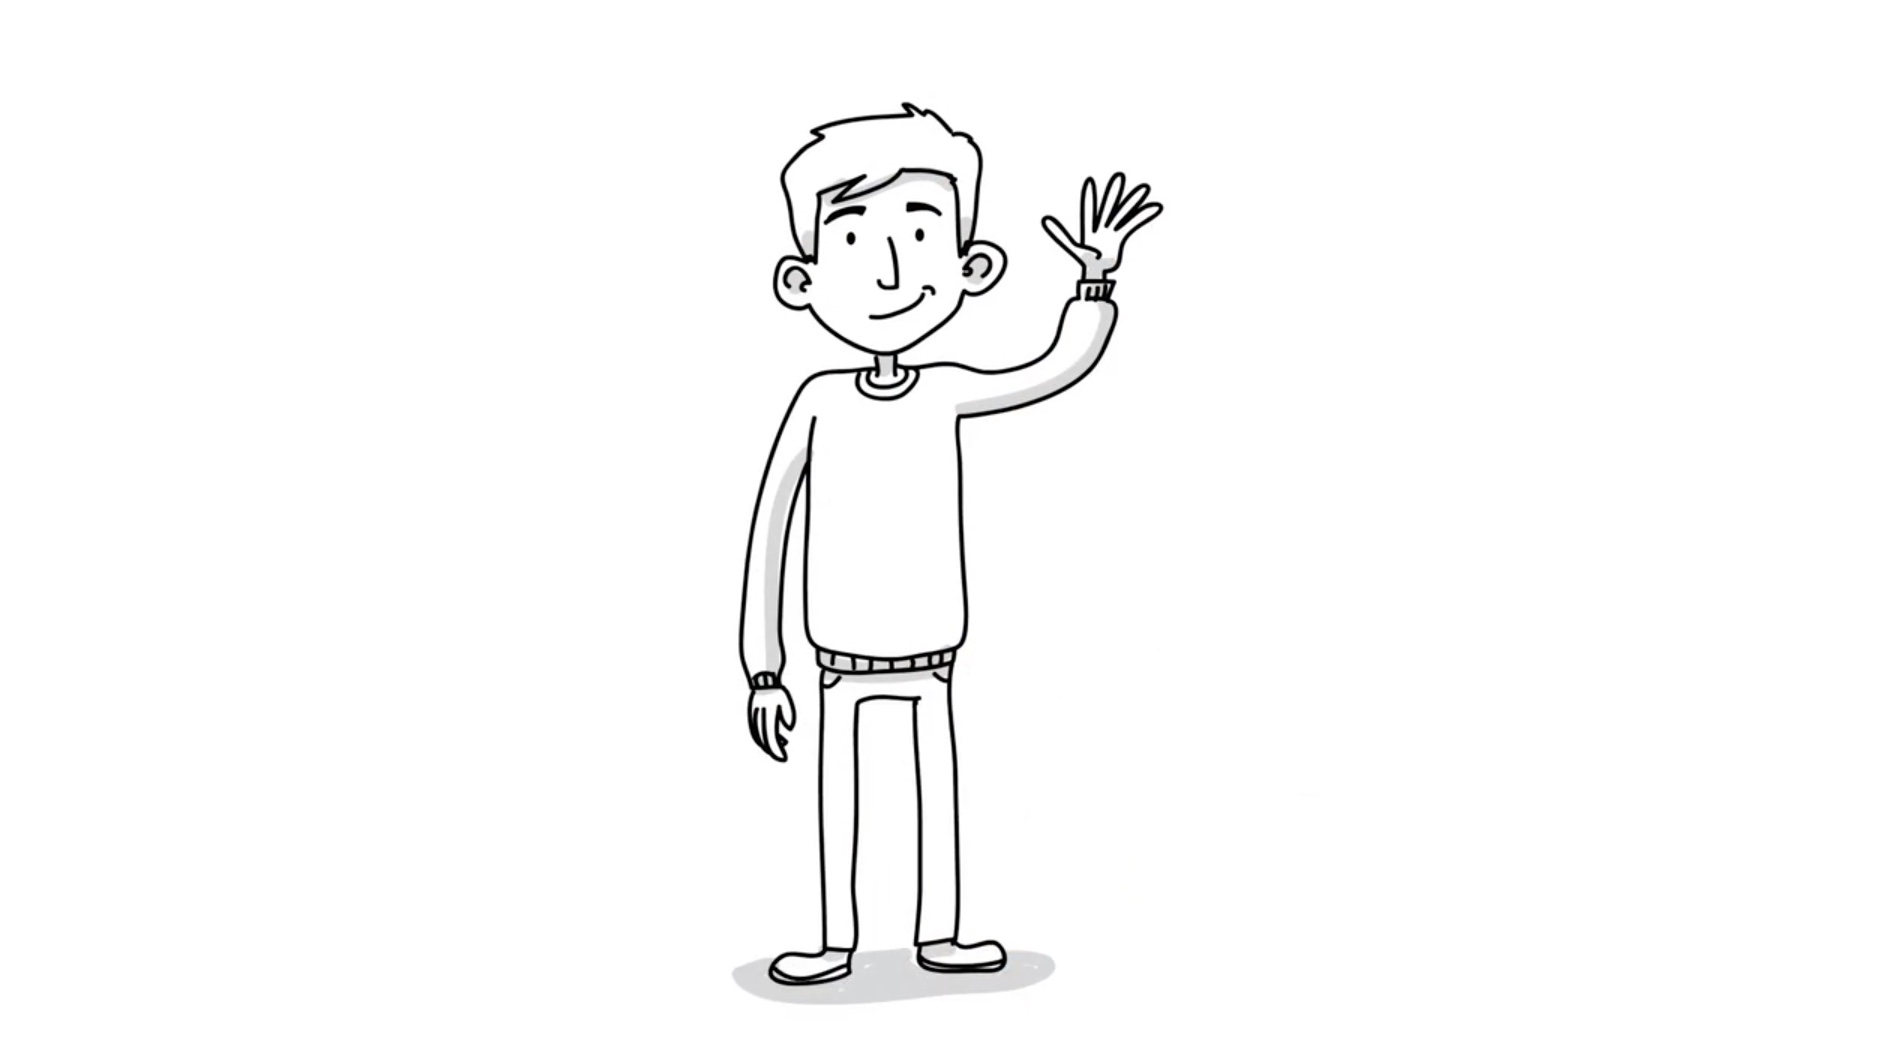 Caricatura de Tom. Haga clic para ver un video de él hablando sobre su camino para ser propietario de una casa.